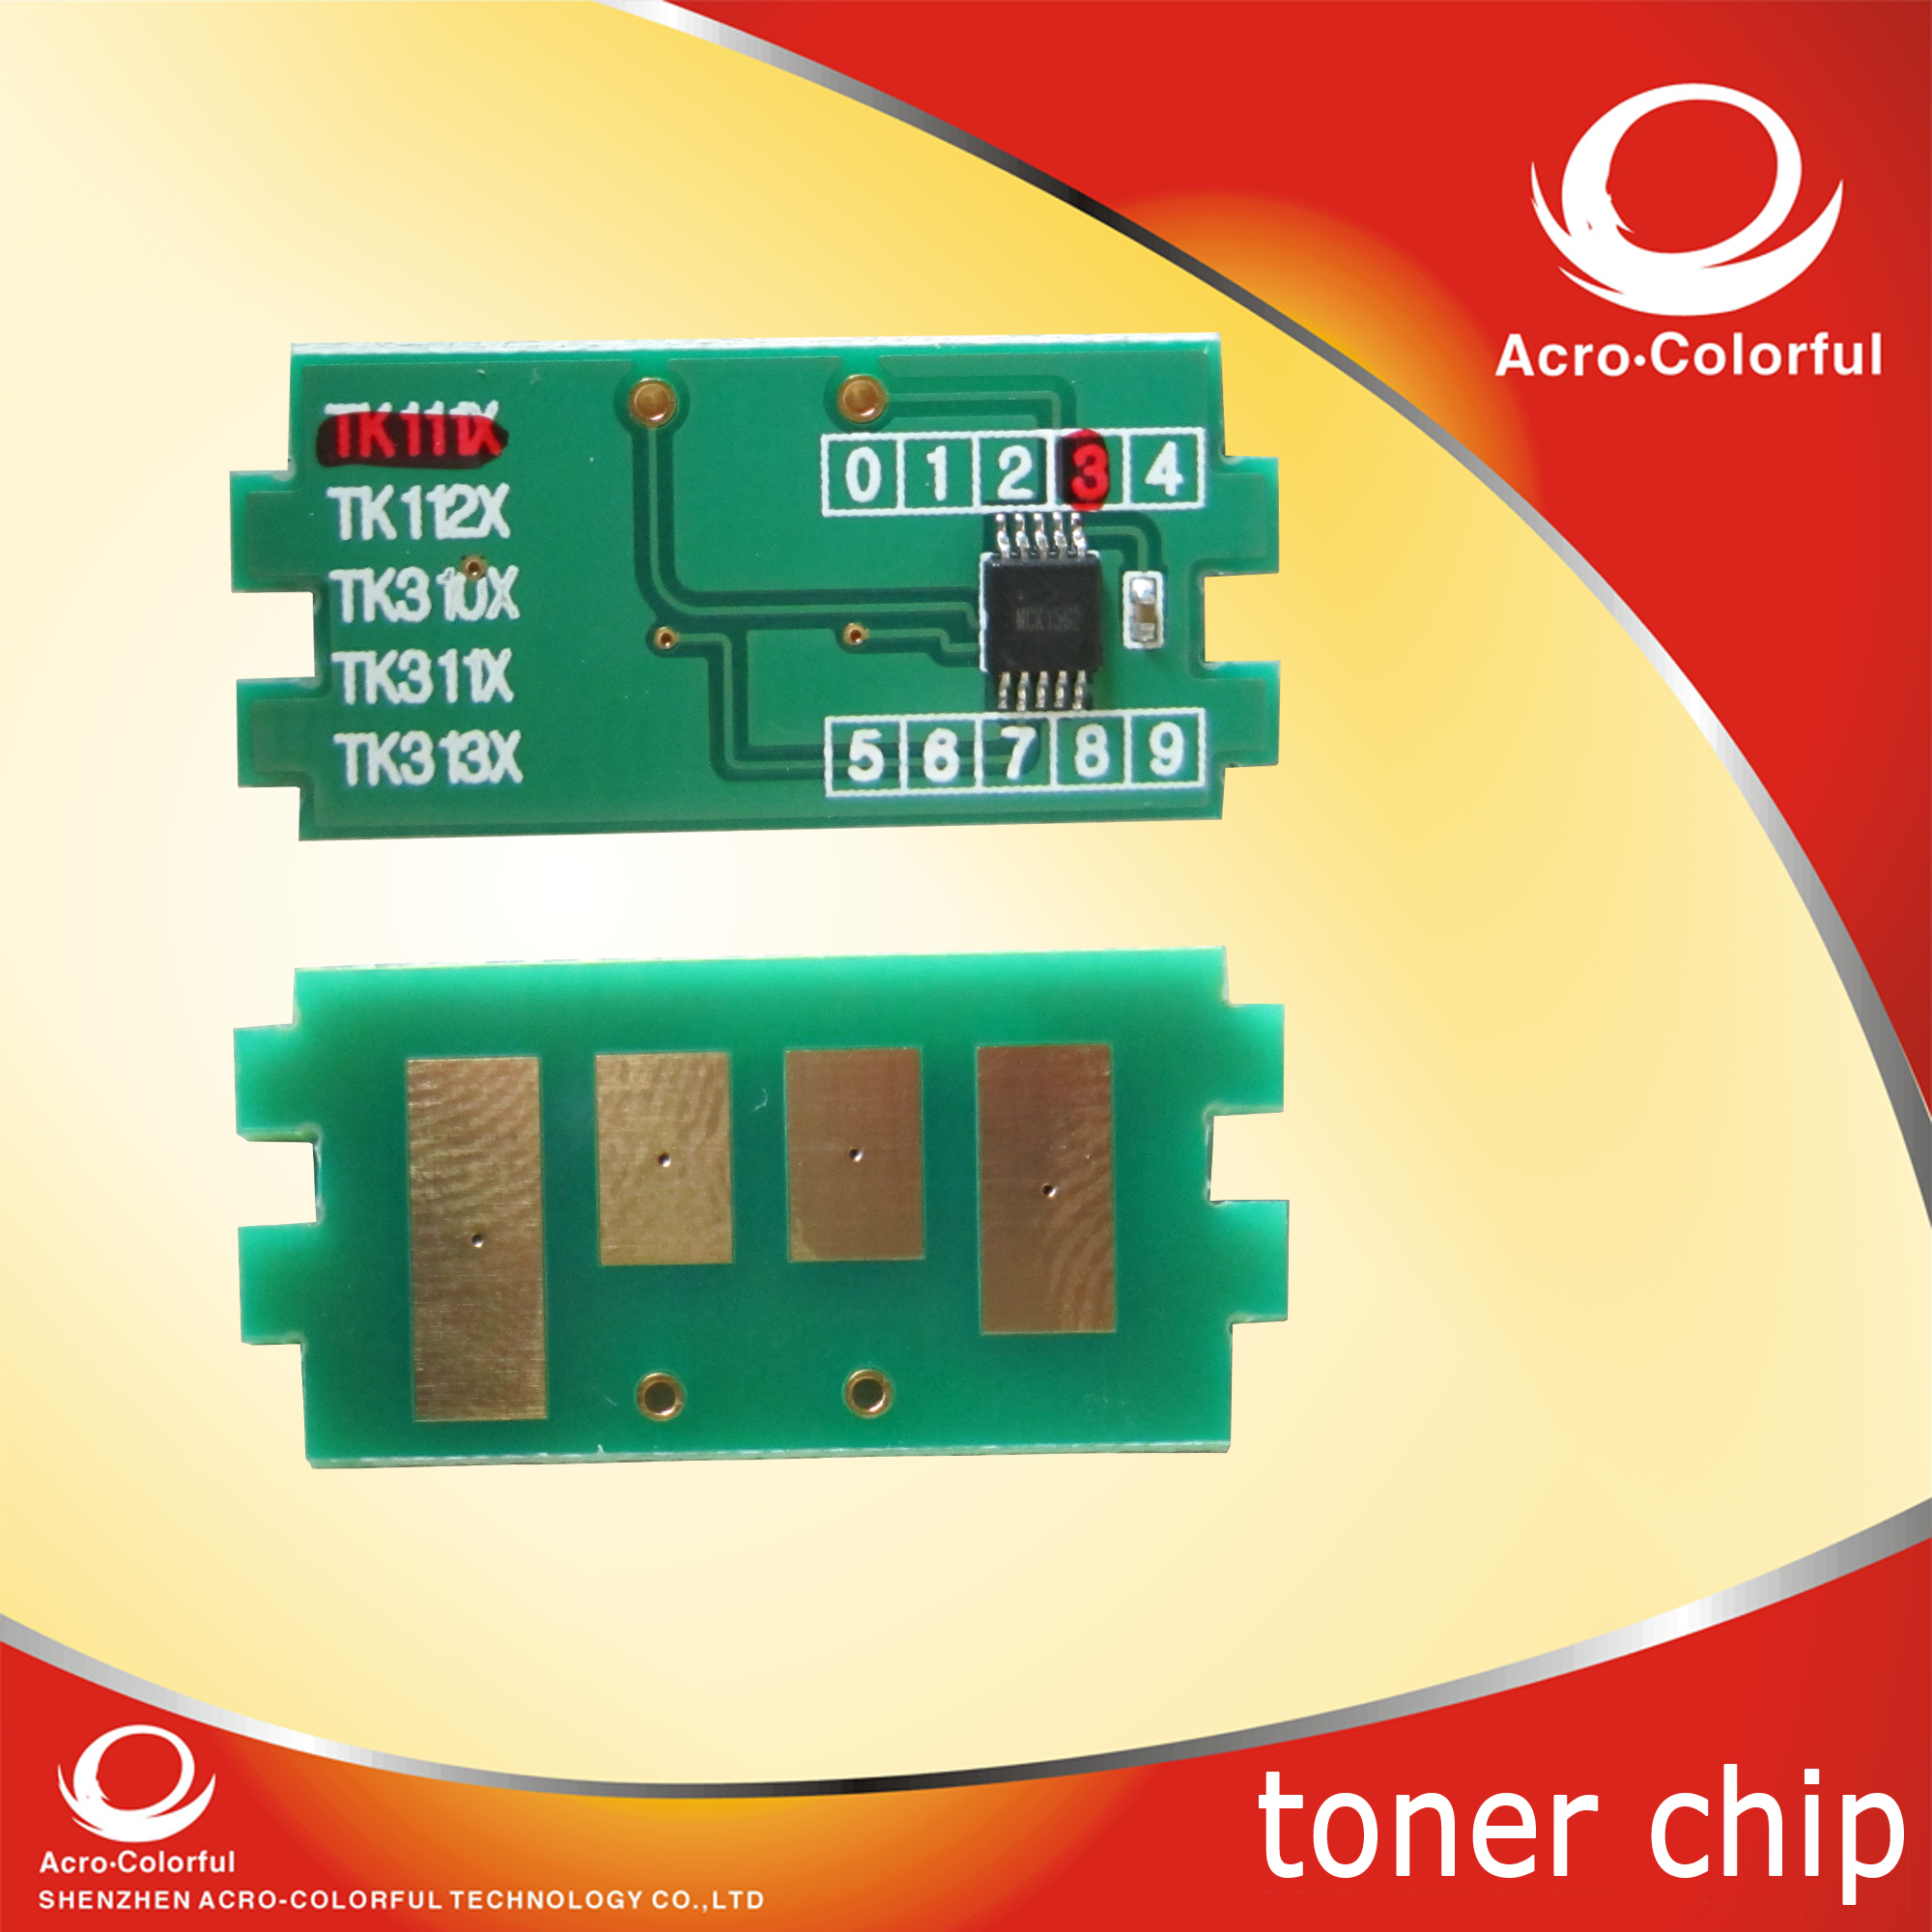 тонер сброса чипа для Kyocera ТК-1114 ТК-1113 ТК-1112 ТК-1110 тонер пополнен картридж для лазерного принтера FS-1040 1020MFP 1120MFP